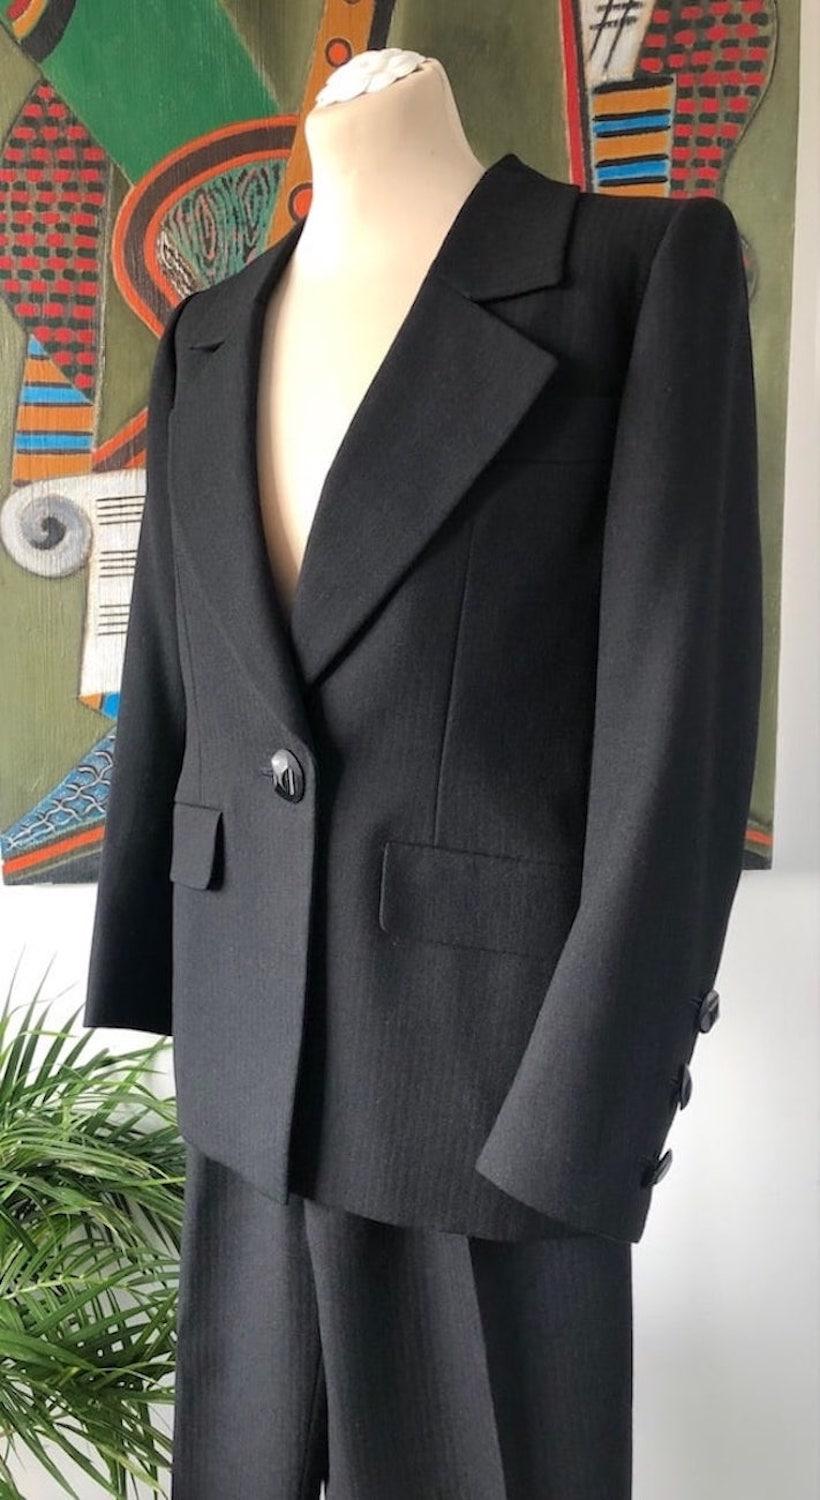 Yves Saint-Laurent Haute Couture Nr.67931 CIRCA 1991-1992. Eine sehr seltene und atemberaubende YSL Haute Couture 3 Stück Wolle Anzug, ein Blazer, eine Hose und ein Rock handgefertigt in Nadelstreifen-Fischgrätmuster. Gefütterte Jacke mit gekerbtem